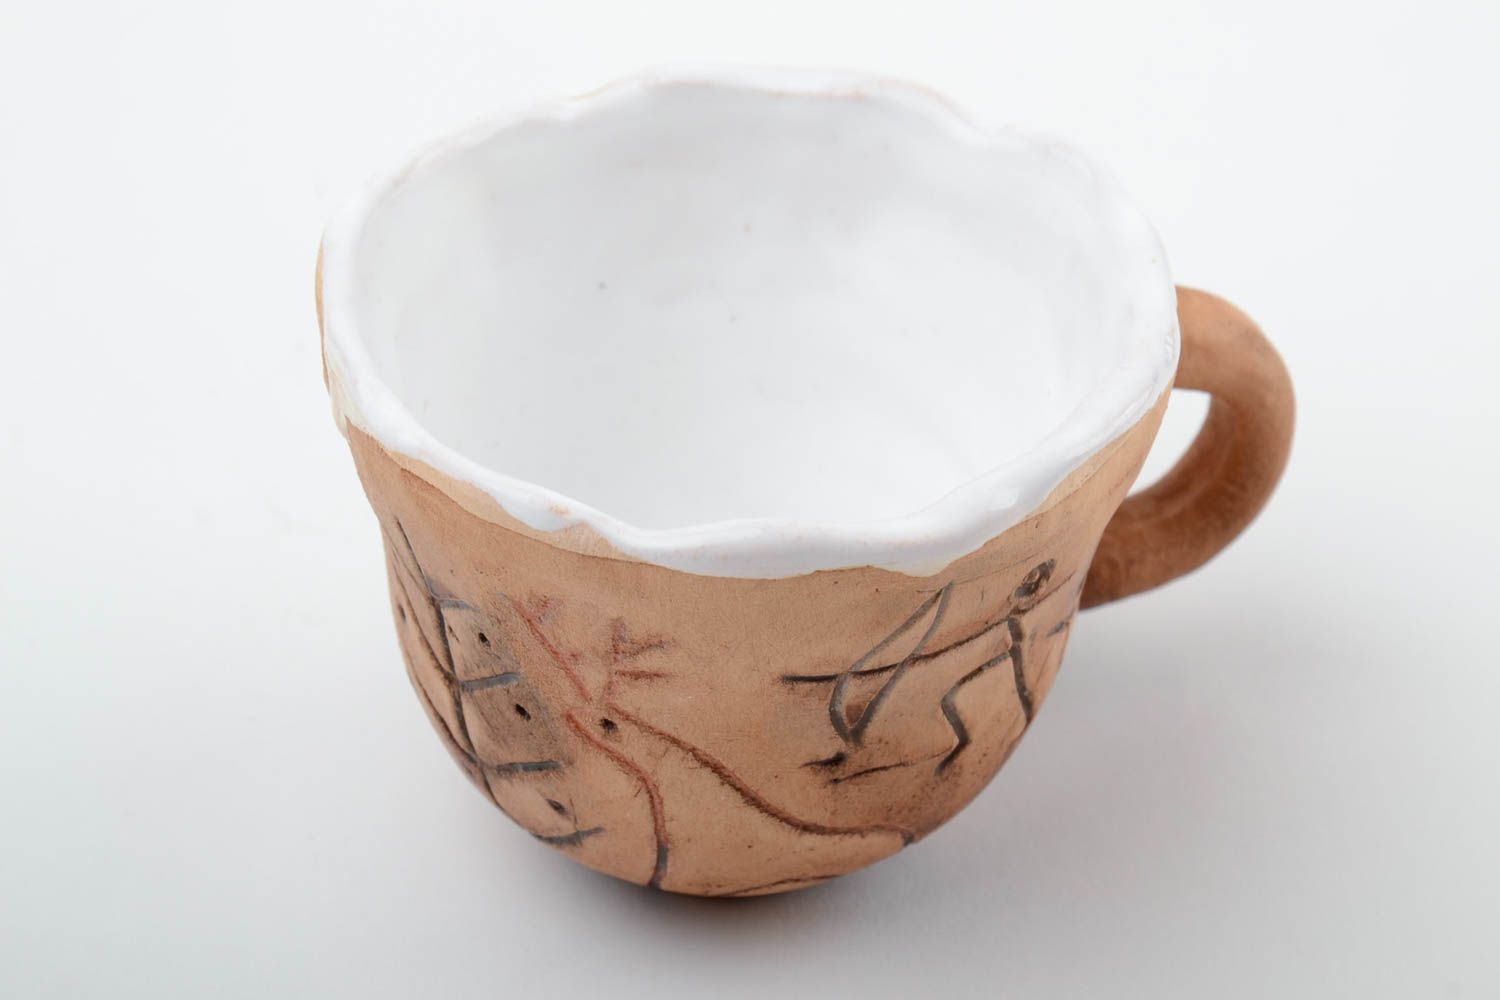 10 oz clay glazed coffee cup with white glaze inside 0,43 lb photo 2